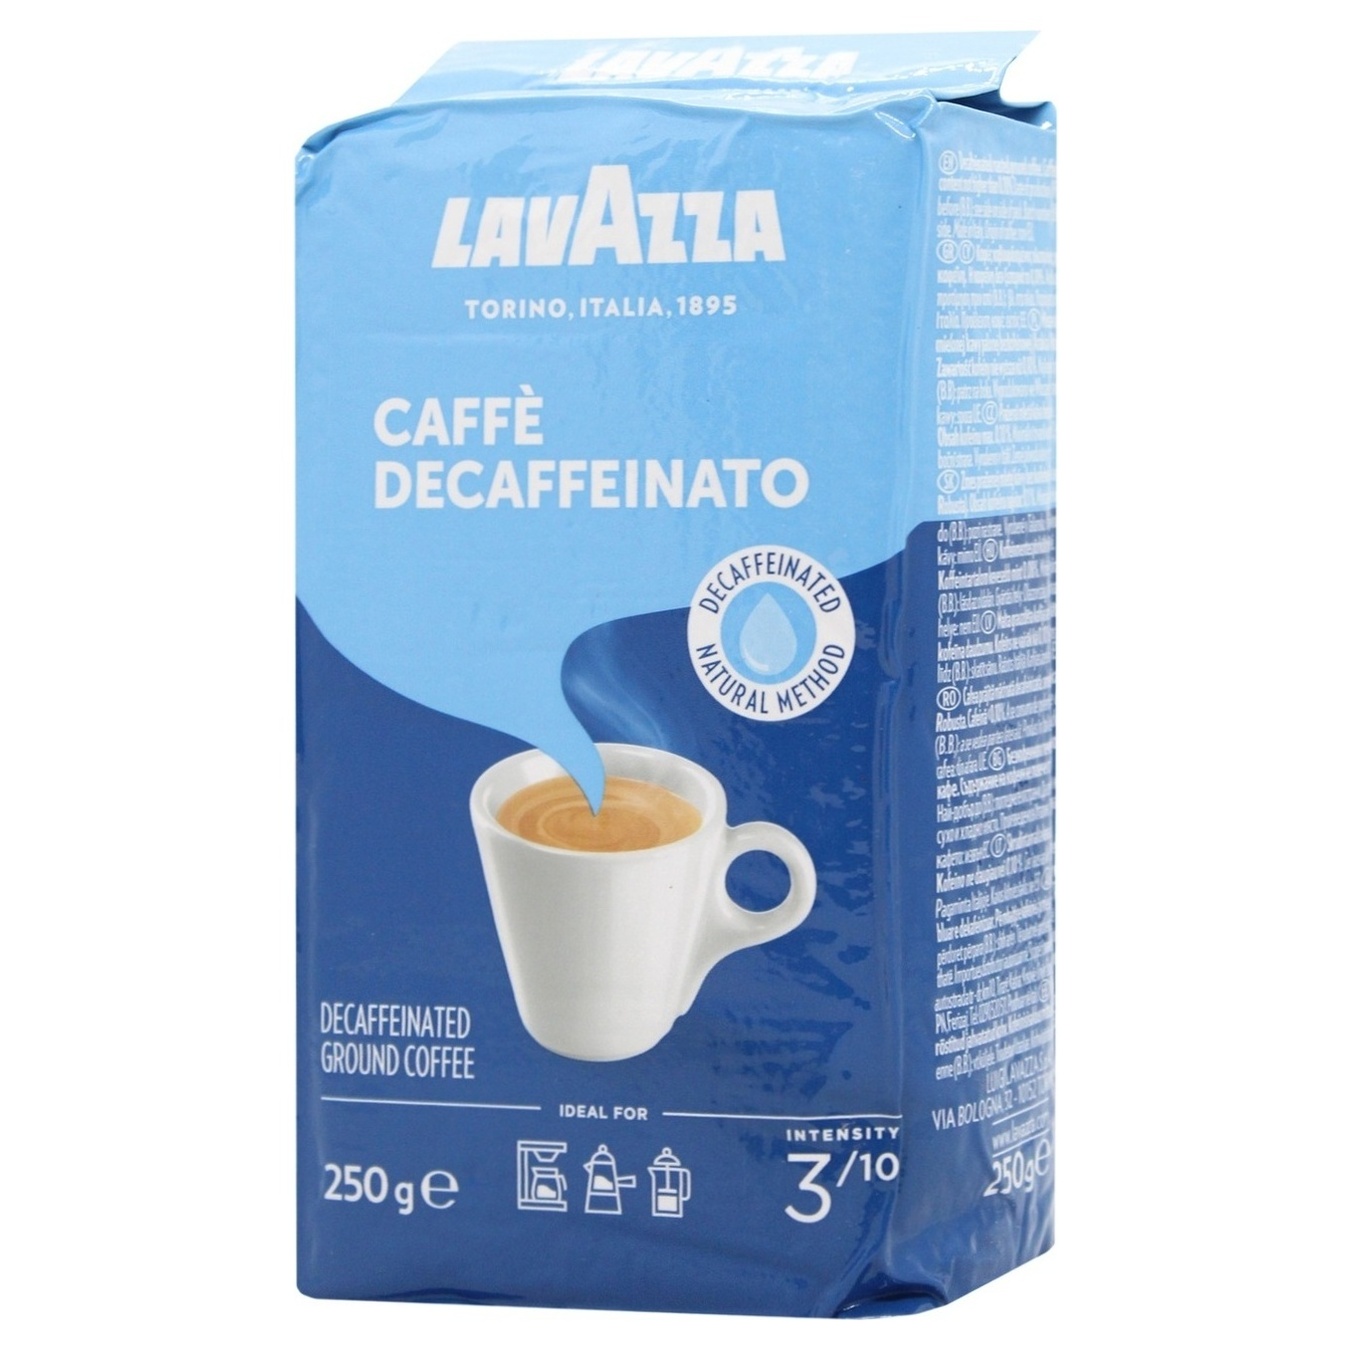 Ground coffee Lavazza Caffe Decaffeinato 250g